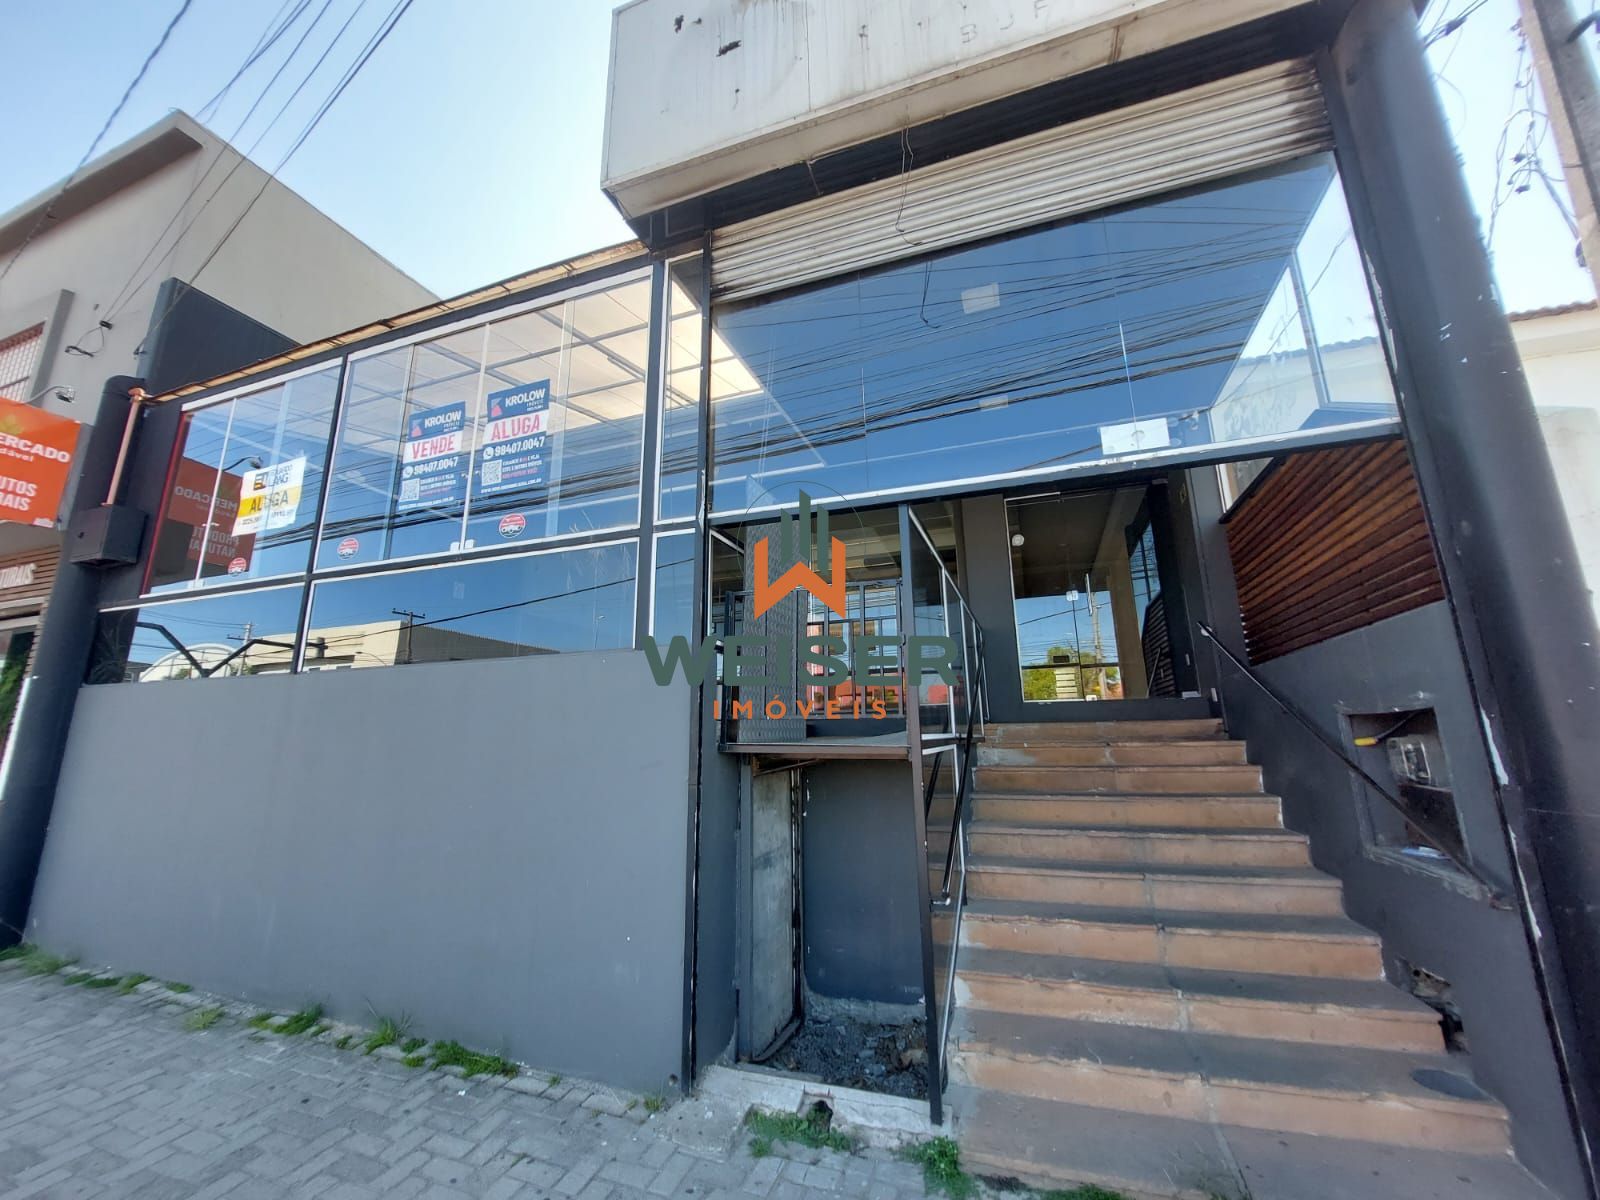 Prdio comercial/residencial para alugar  no Trs Vendas - Pelotas, RS. Imveis